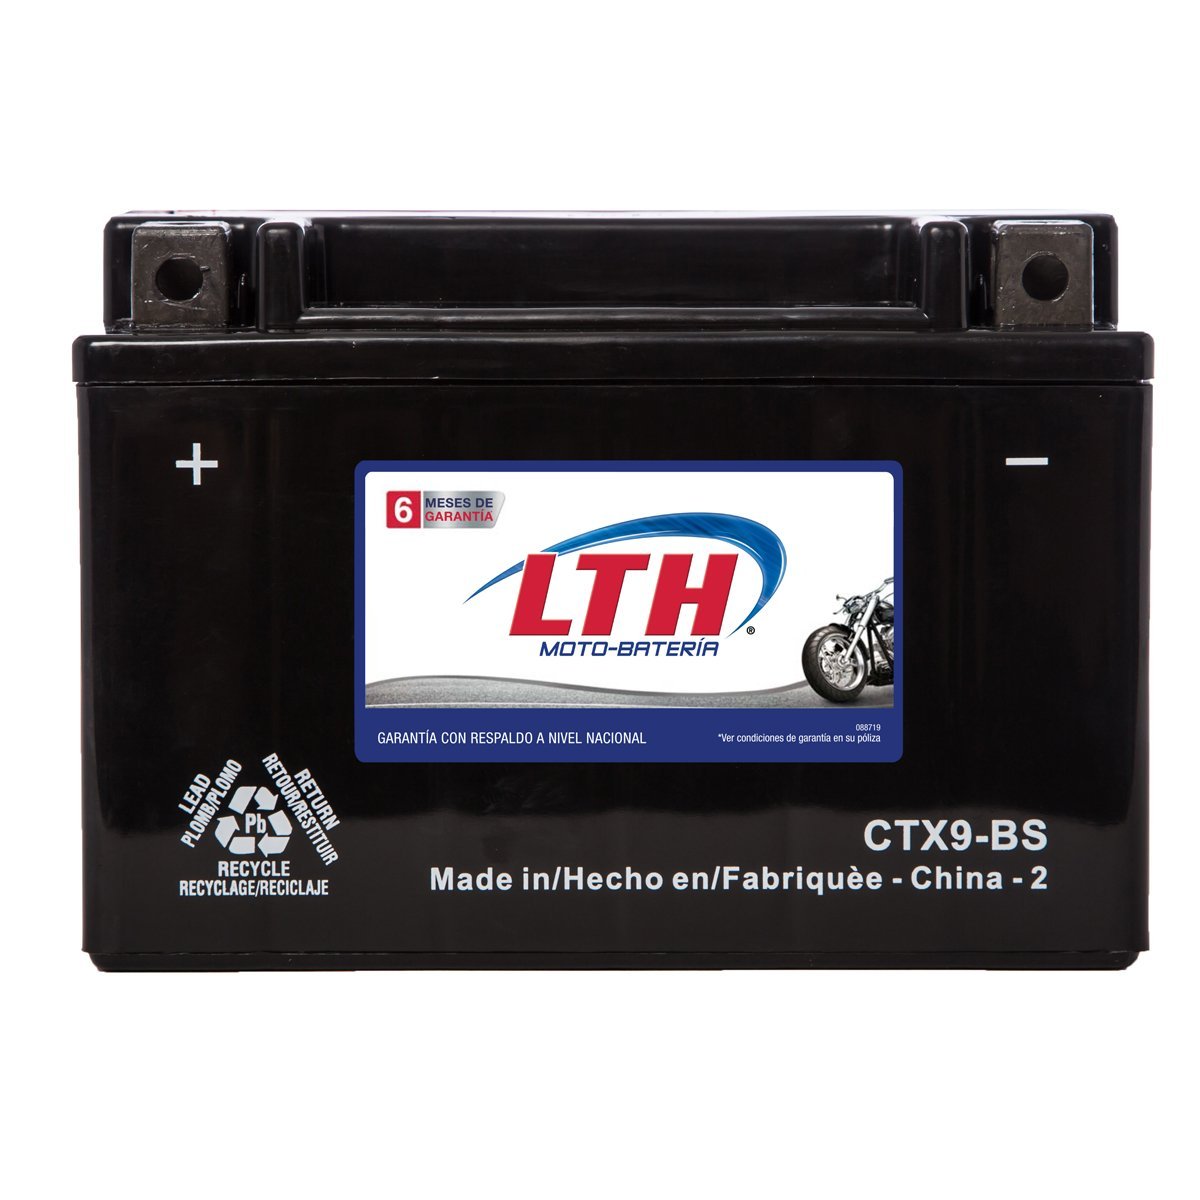 Moto Bater&iacute;a Lth Ctx9Bs